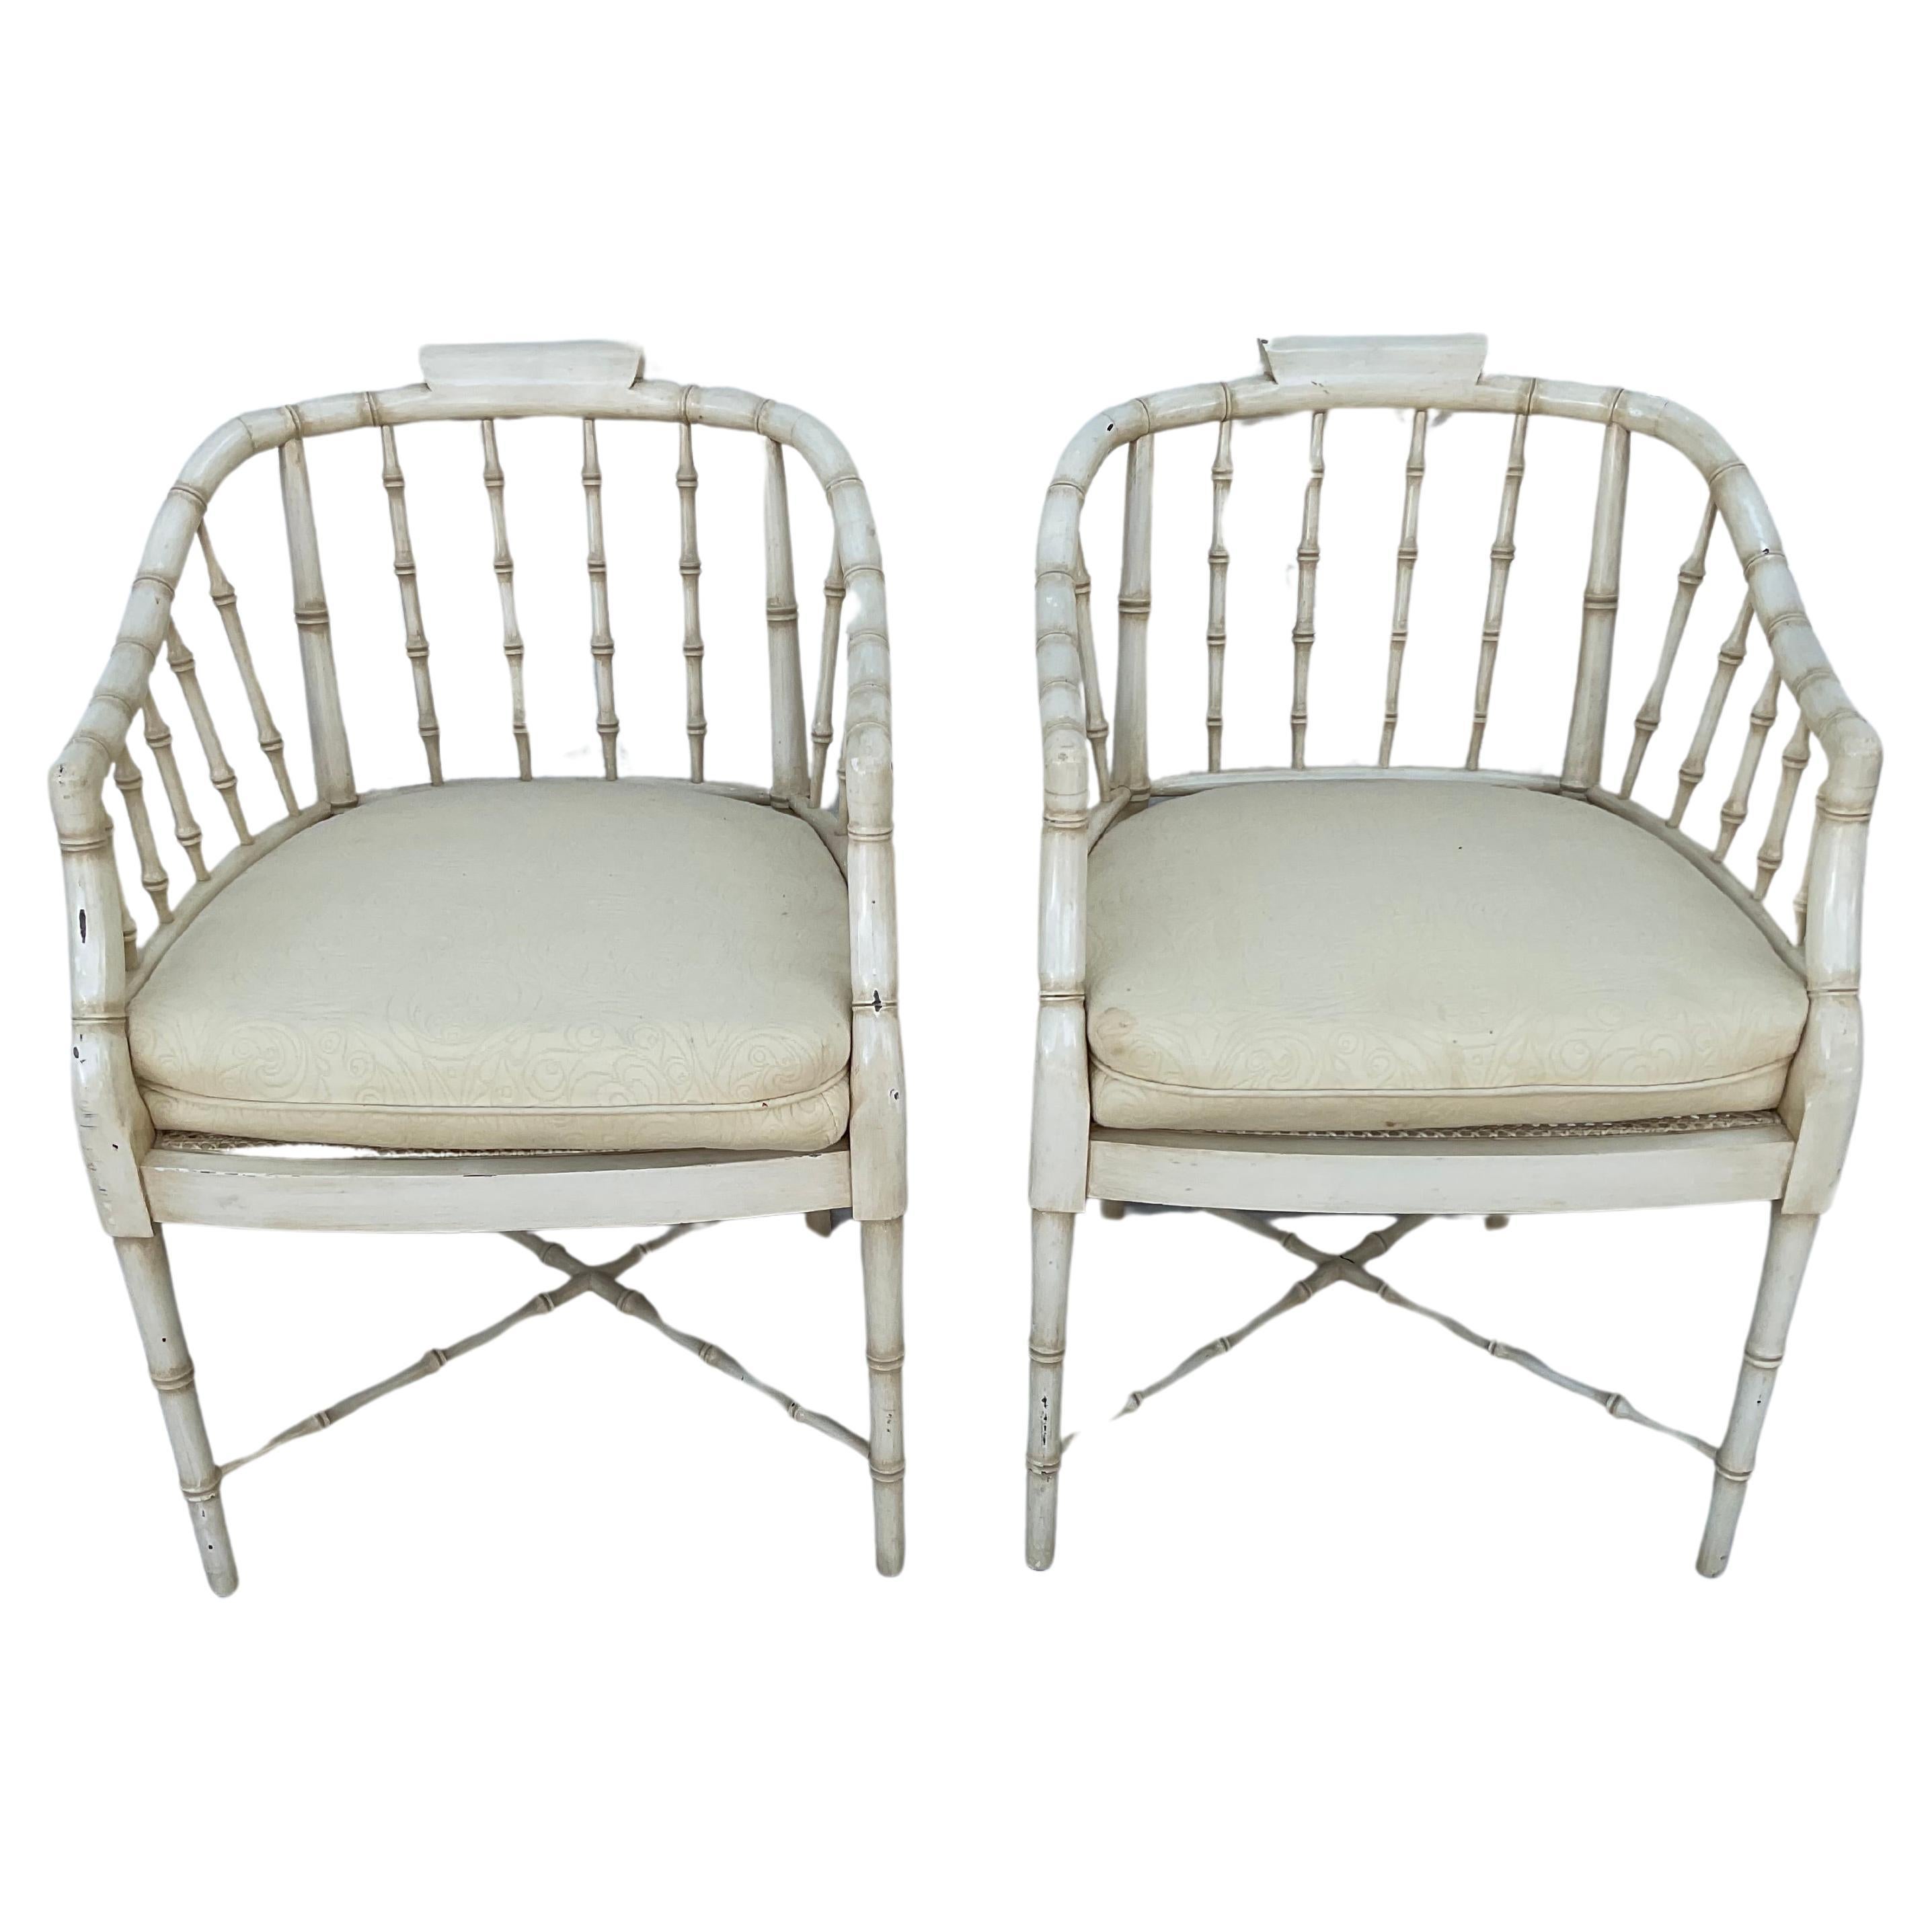 Feines Paar Regency-Stil faux Bambus Sessel, gemalt eine Creme Farbe. Mit wannenförmigen Rückenlehnen und Sitzflächen aus Schilfrohr.  Die Stühle stehen auf vier schlanken Beinen, die durch eine X-förmige Streckbank verbunden sind. Sie sind mit